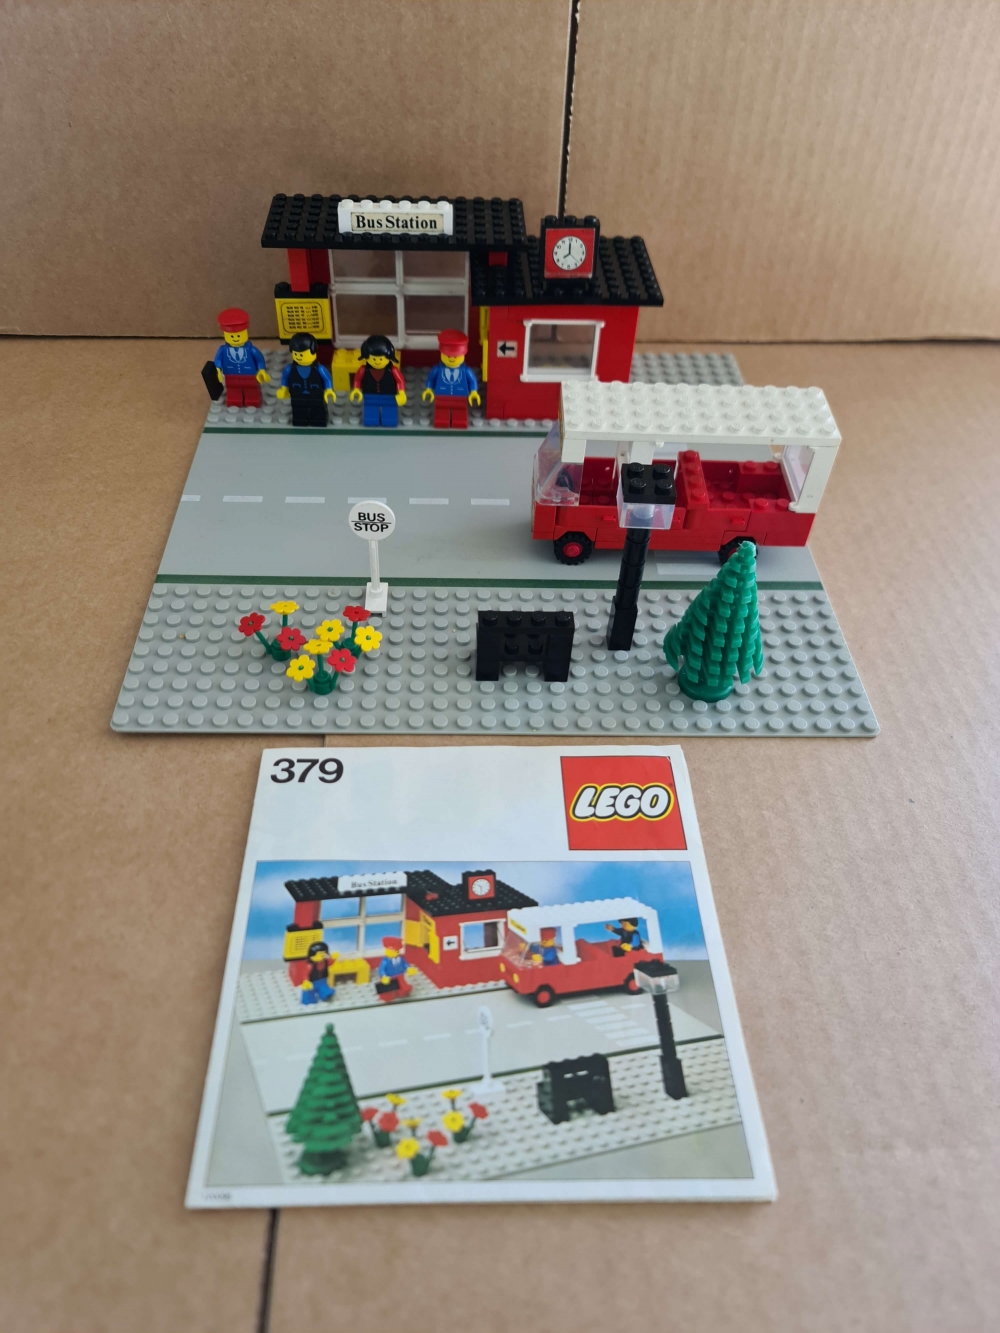 Sett 379 fra Lego Classic Town serien
Komplett med manual. Fint sett for å være 43 år gammelt.
Noe nyanseforskjeller og bruksmerker på regnes med.